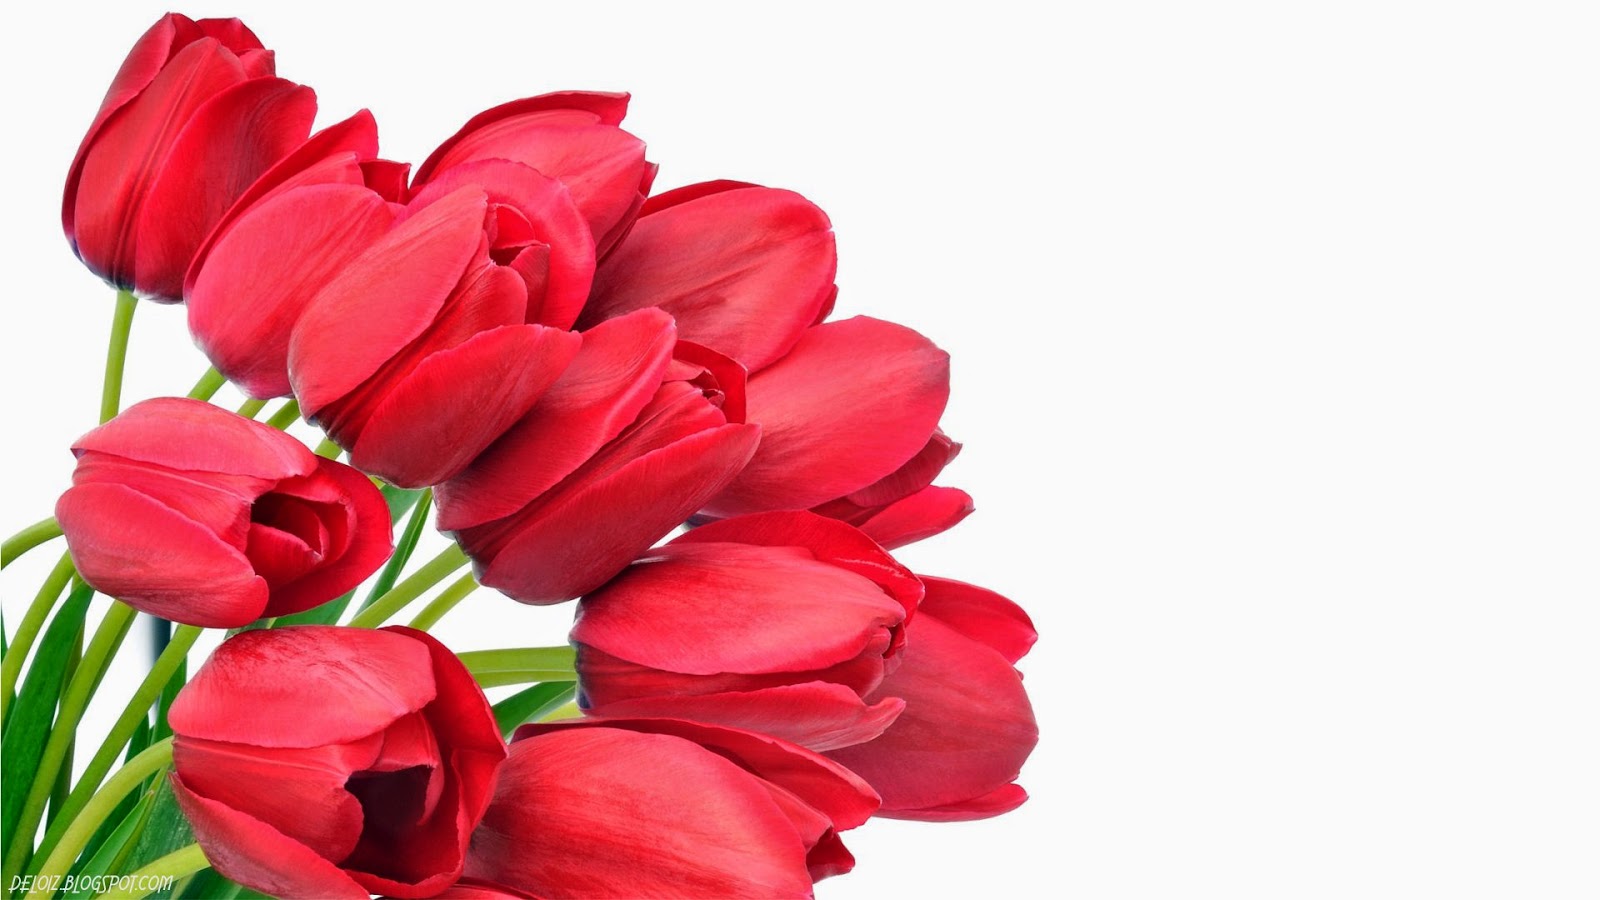 Wallpaper Bunga Tulip Merah | Deloiz Wallpaper